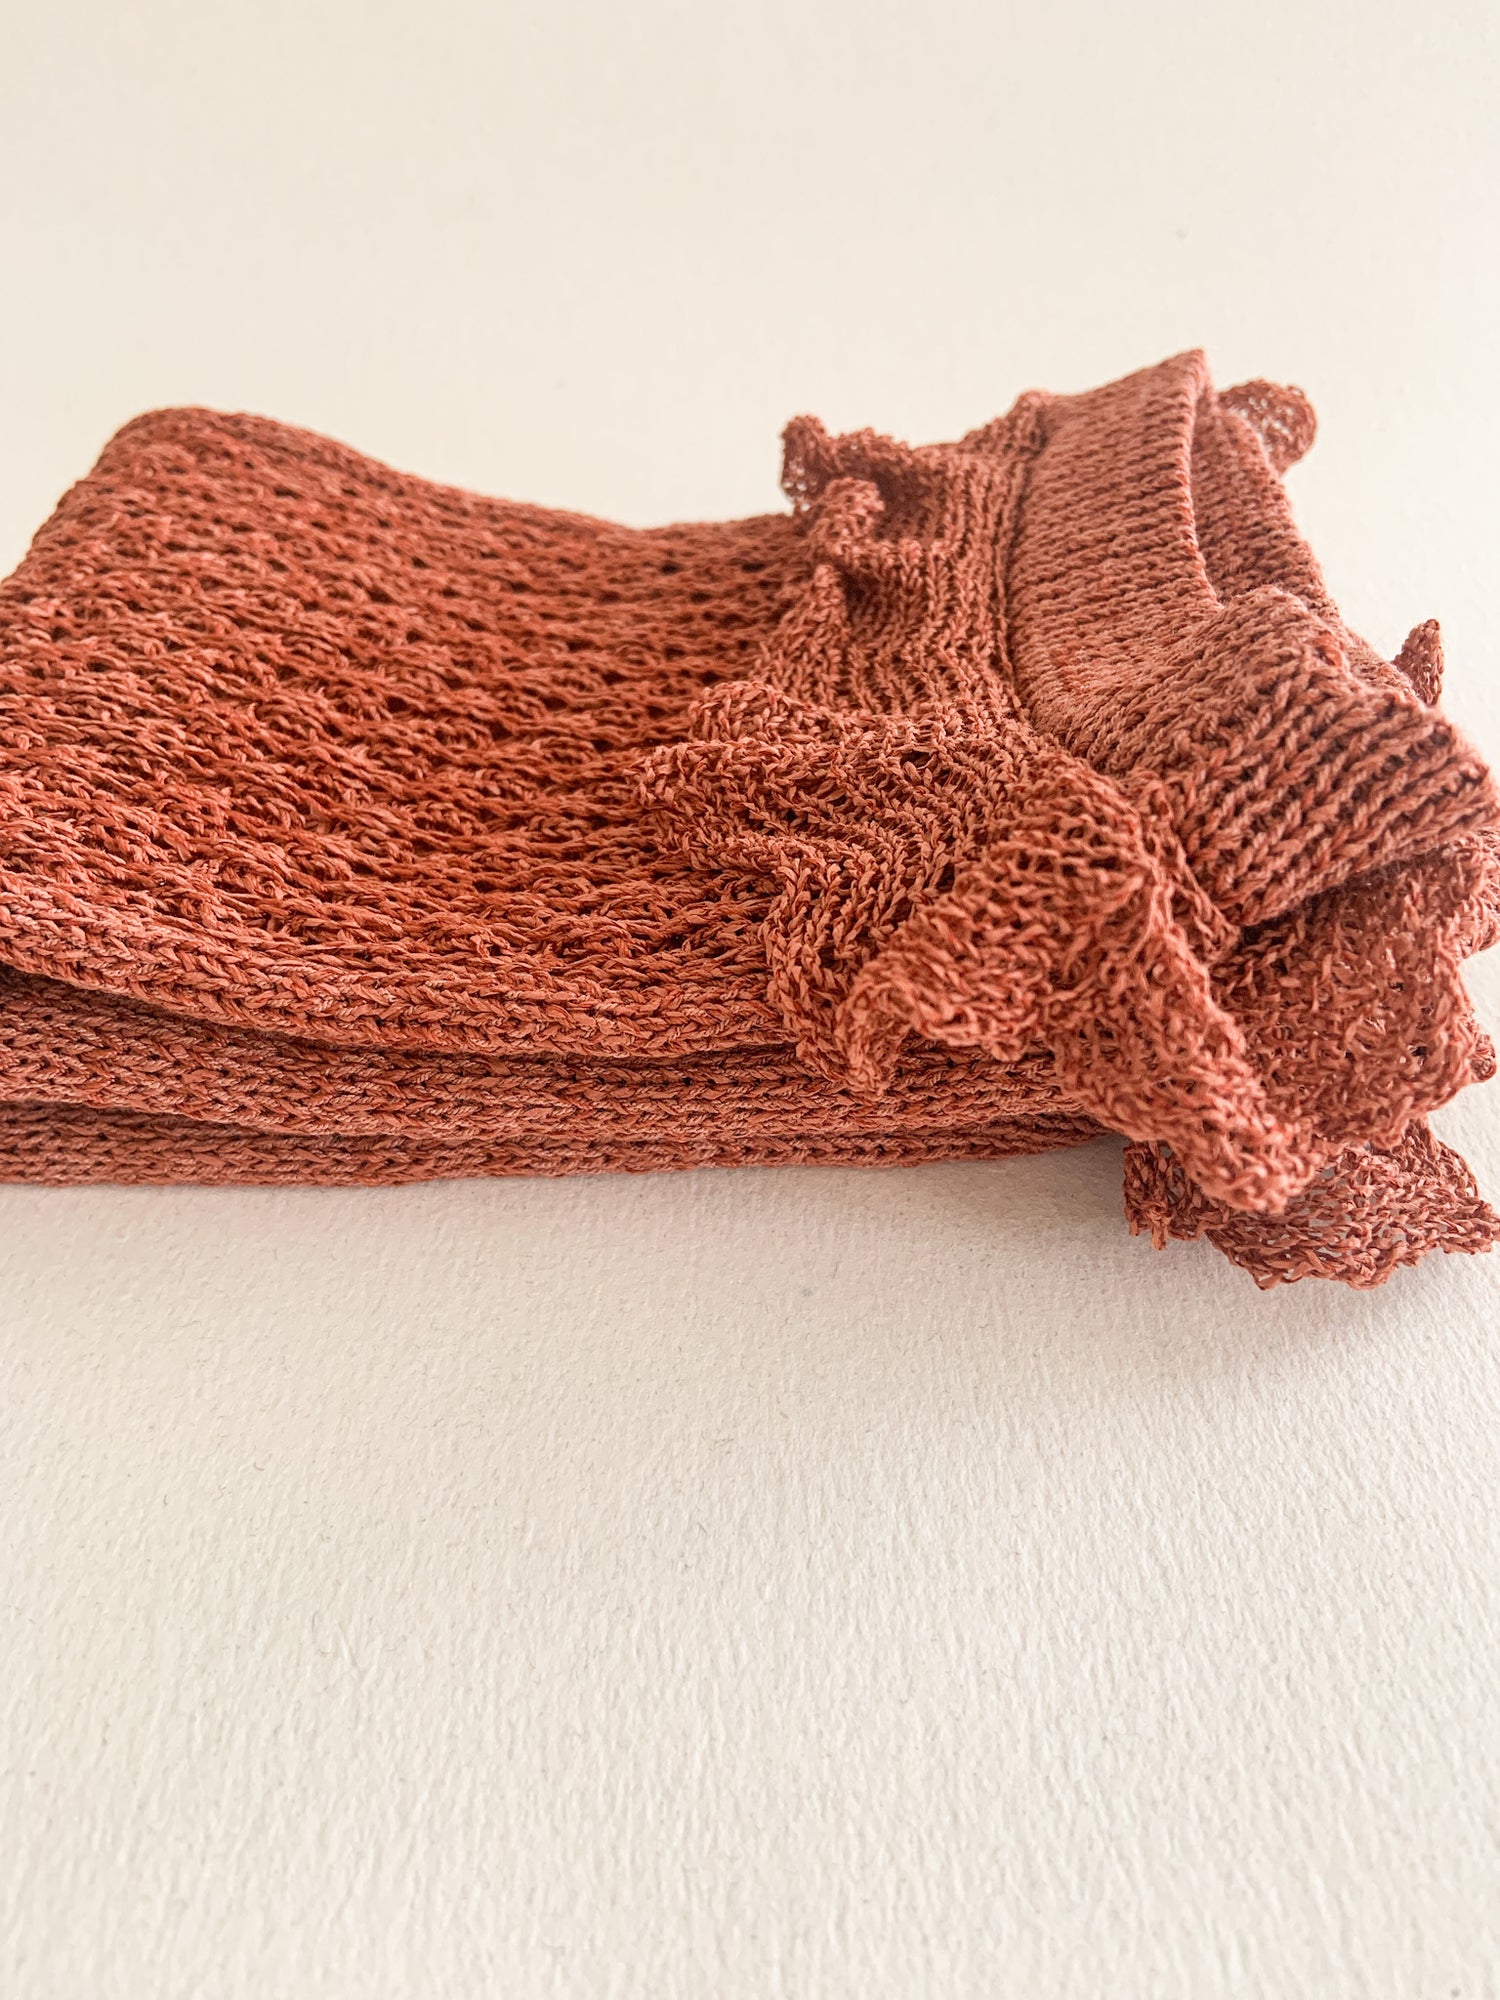 Chausettes tricotées à la machine à tricot, à partir d'un fil de papier. Fait-main.